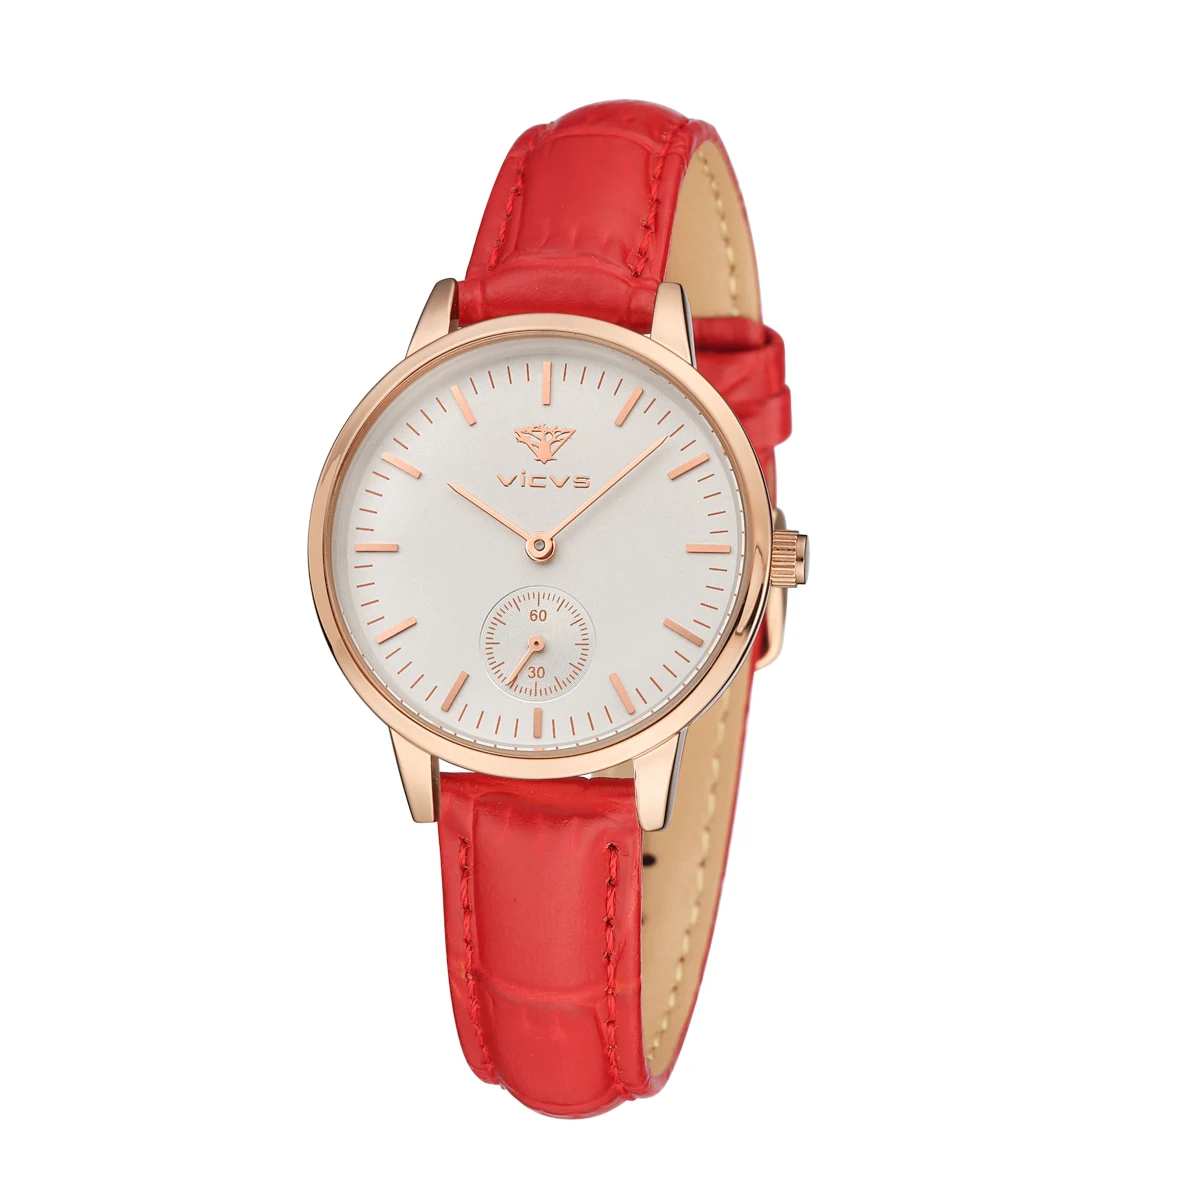 female watch Fashion Waterproof Sport Women Watches Red Ladies Luxury Leather Strap quartz wristwatches часы мужские enlarge